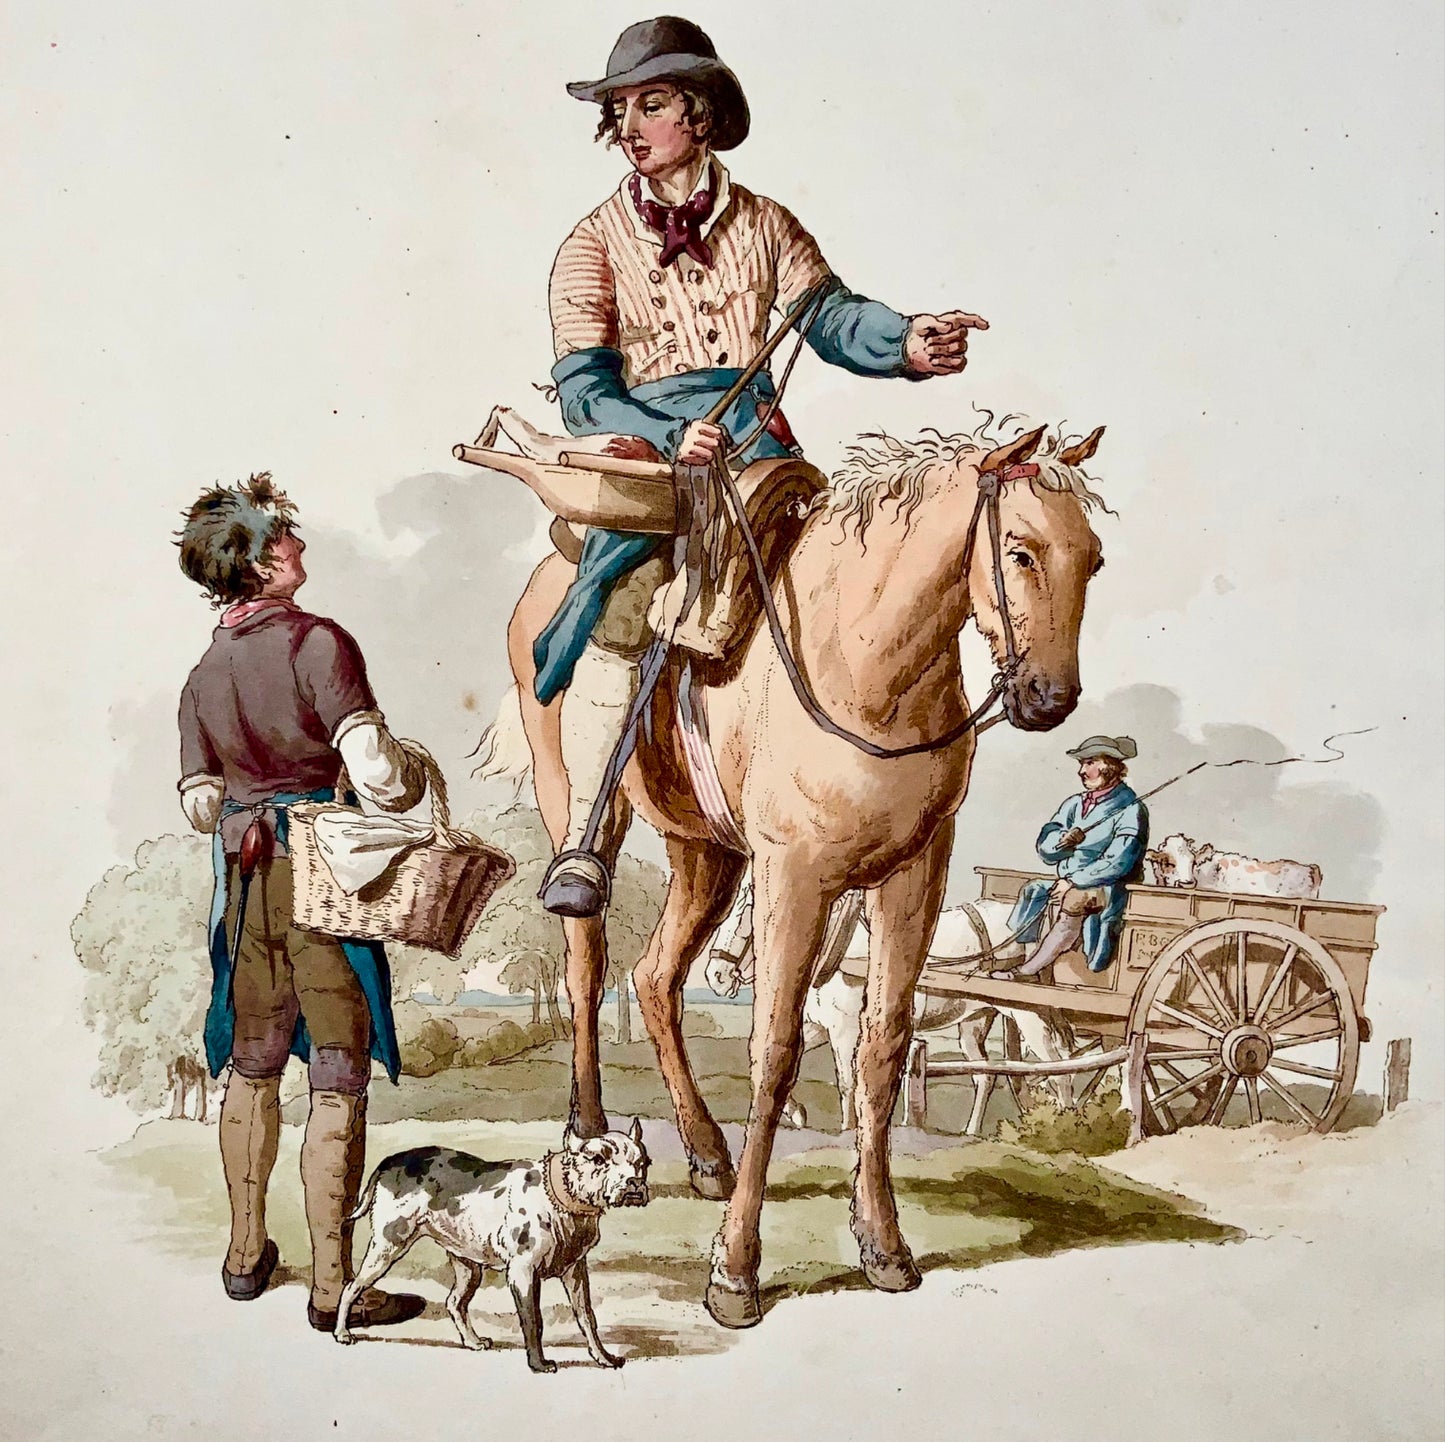 1805 Wm Pyne, The Butcher, commerci, acquatinta in folio con colori a mano